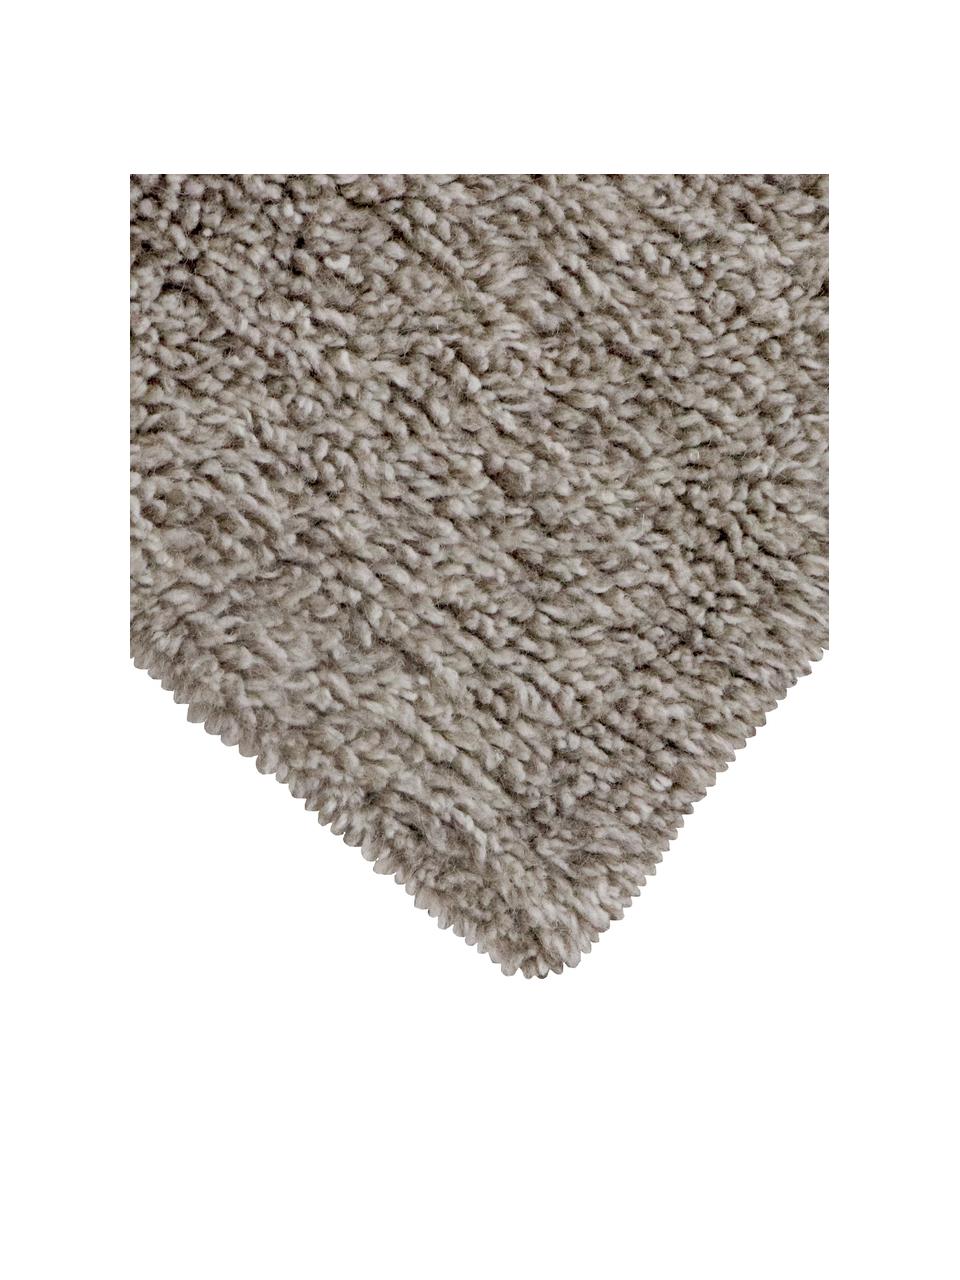 Handgefertigter Wollteppich Tundra in Grau, waschbar, Flor: 100% Wolle, Grau, B 80 x L 140 cm (Grösse XS)